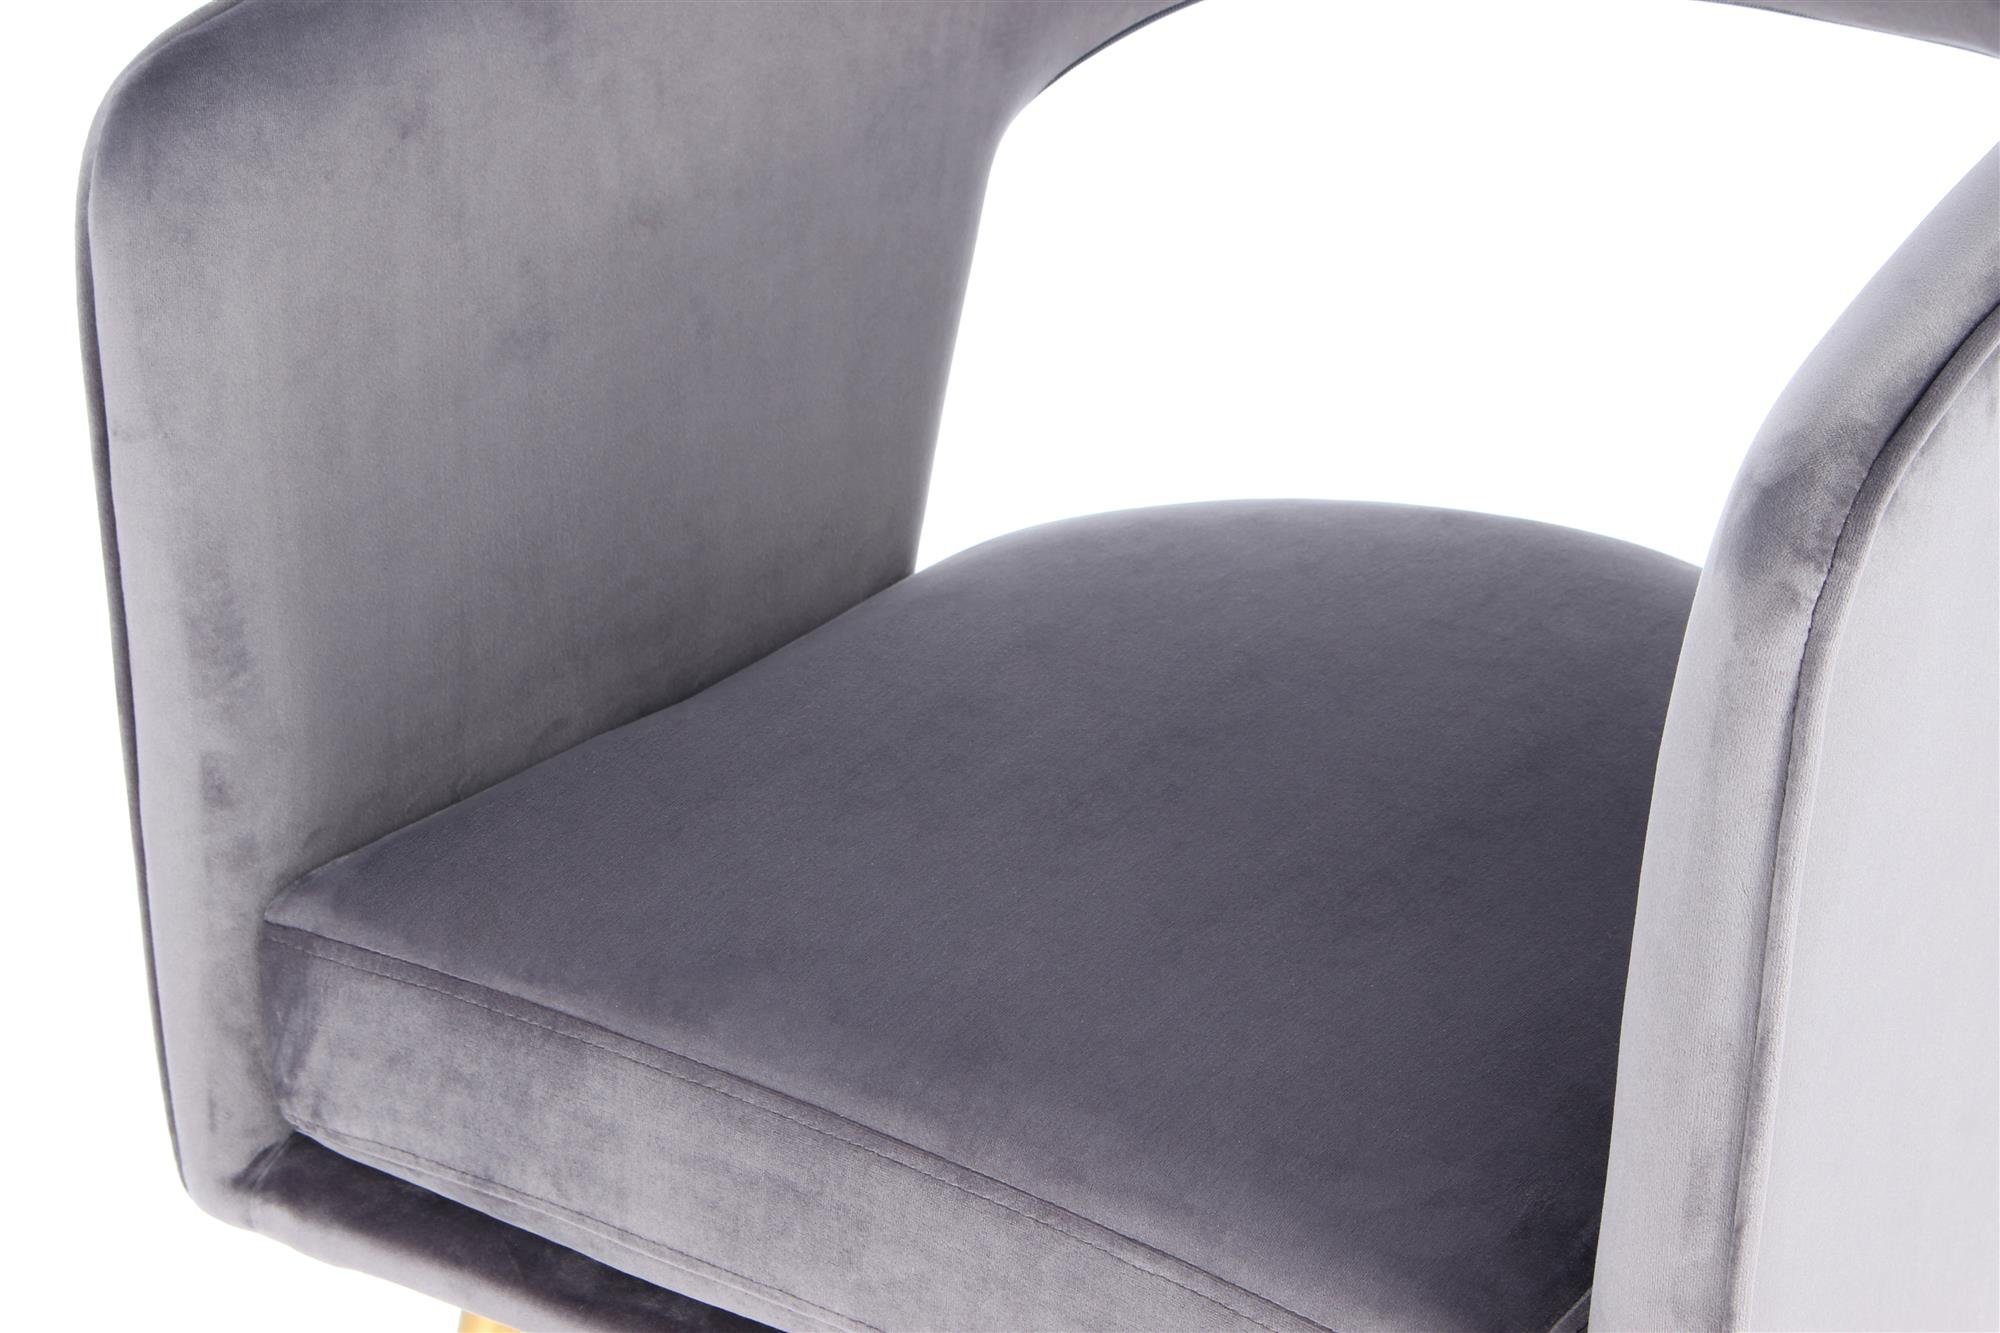 Grau Lania | Grau Stuhl Stuhl Qiyano